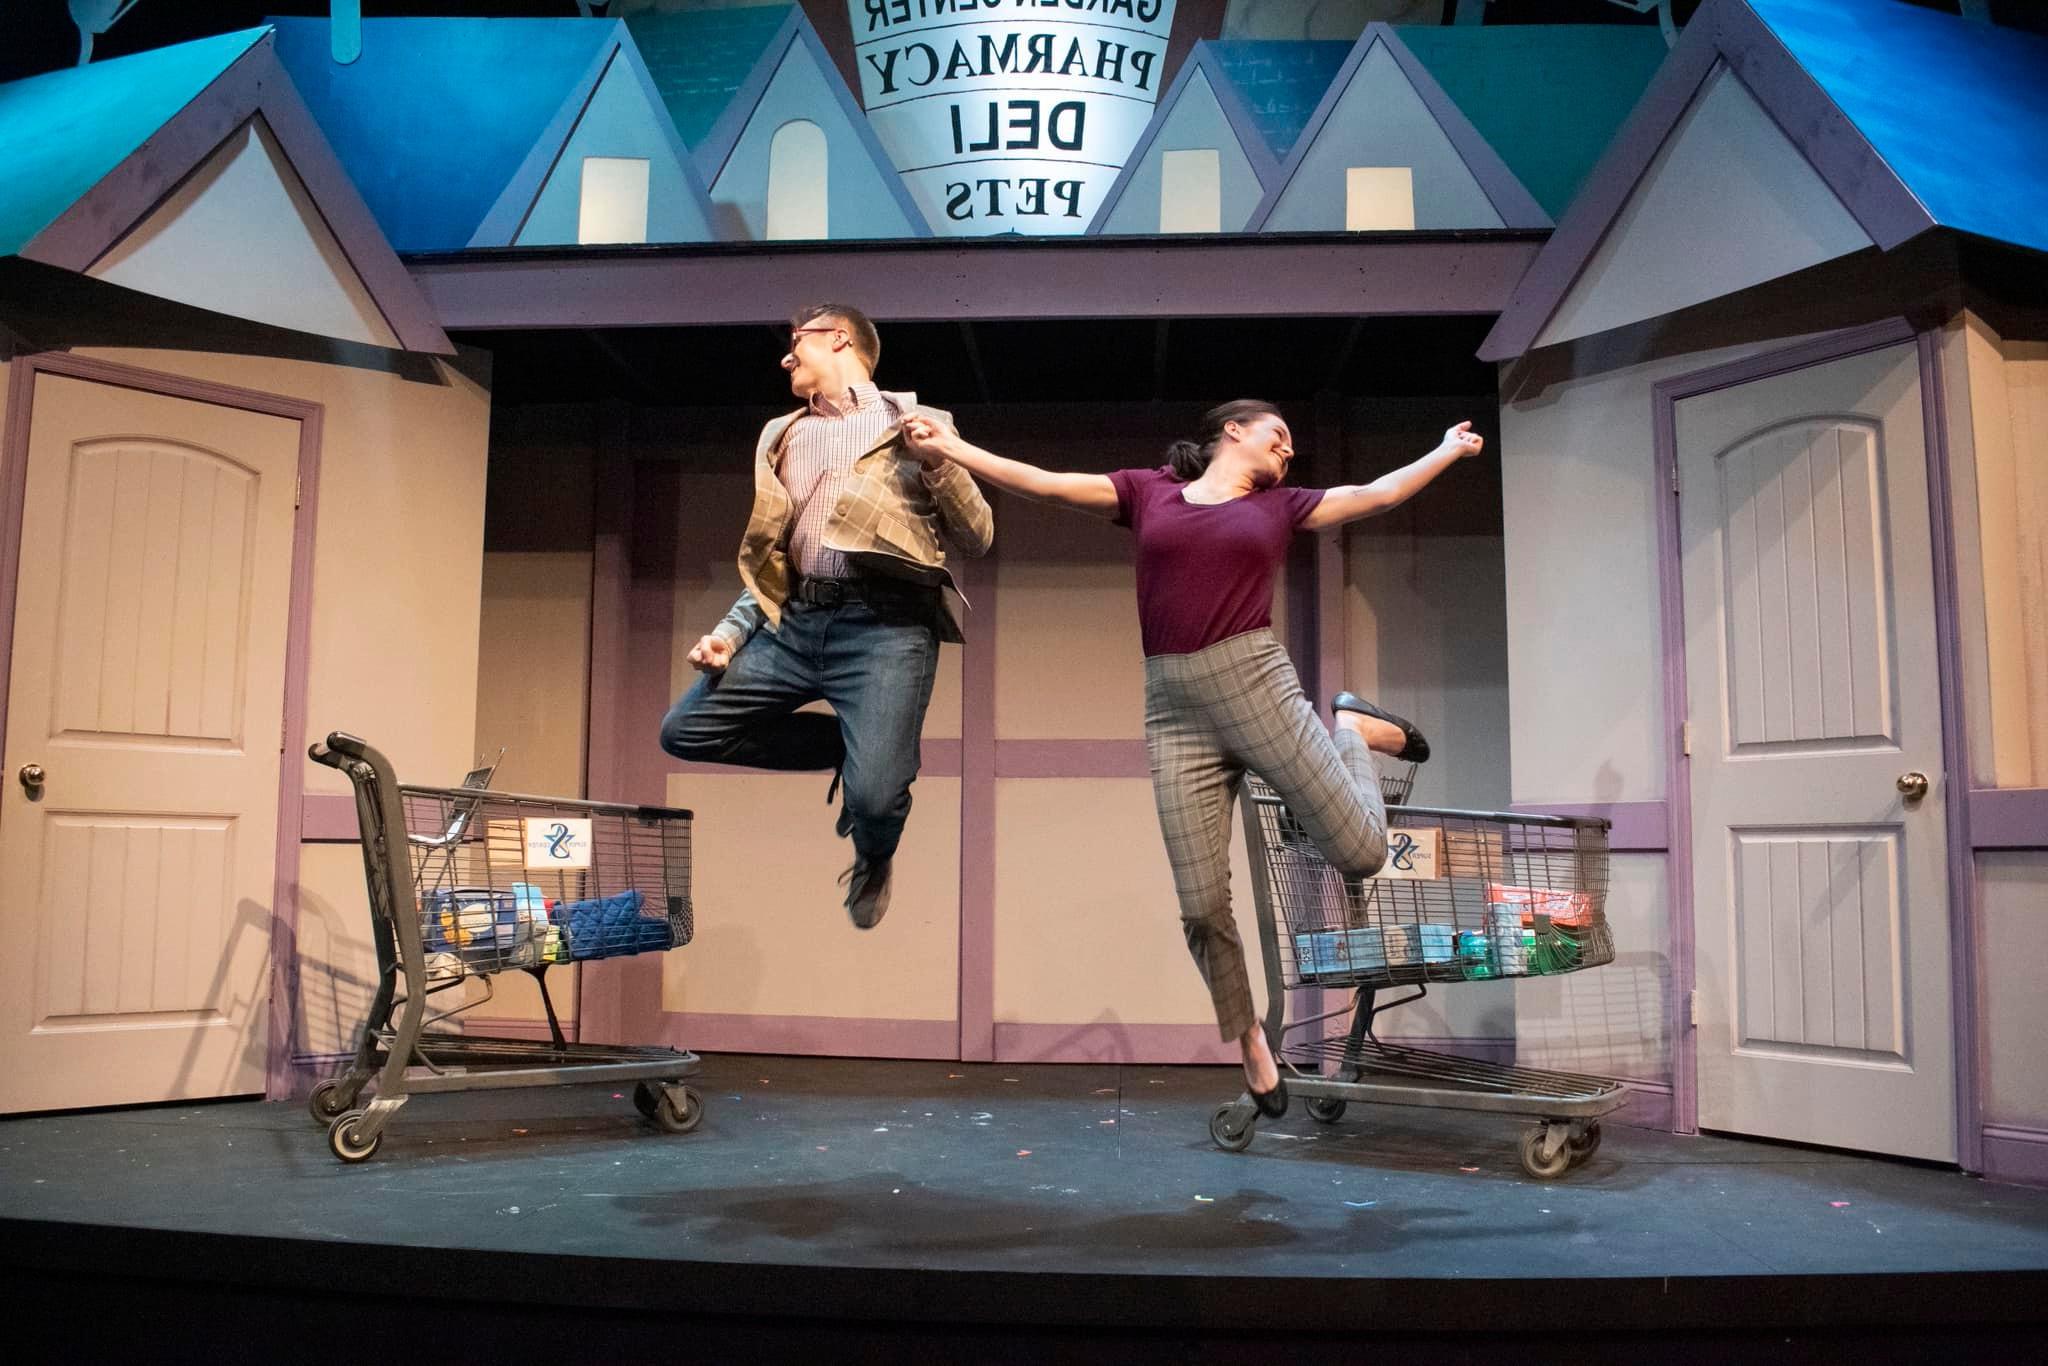 两个演员在舞台上跳向空中，看起来像一家杂货店, 两辆购物车，舞台左右两侧各有一扇门.